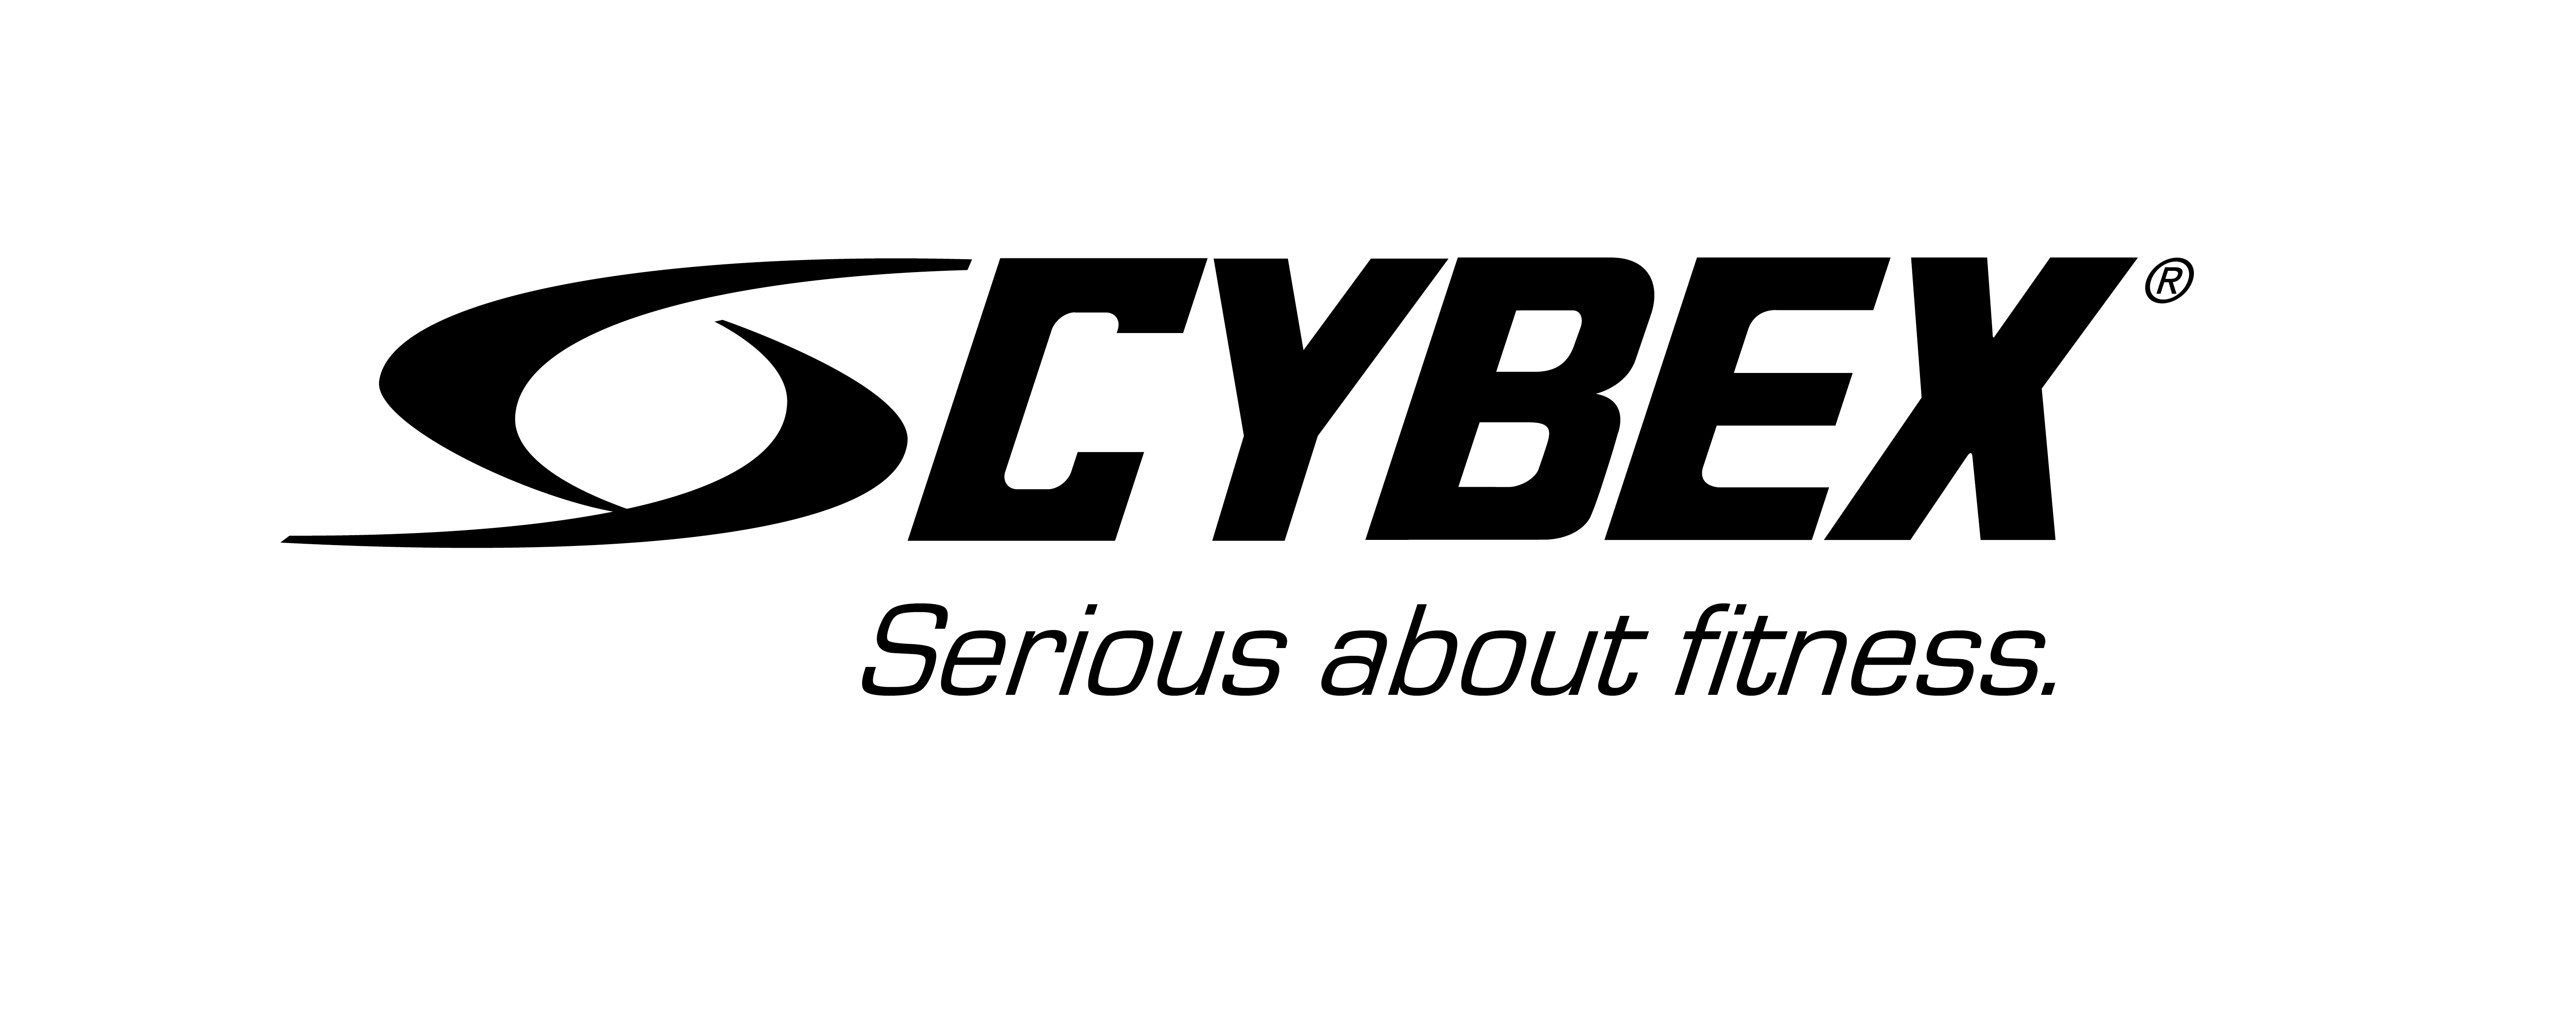 cybex-logo-and-tagline2